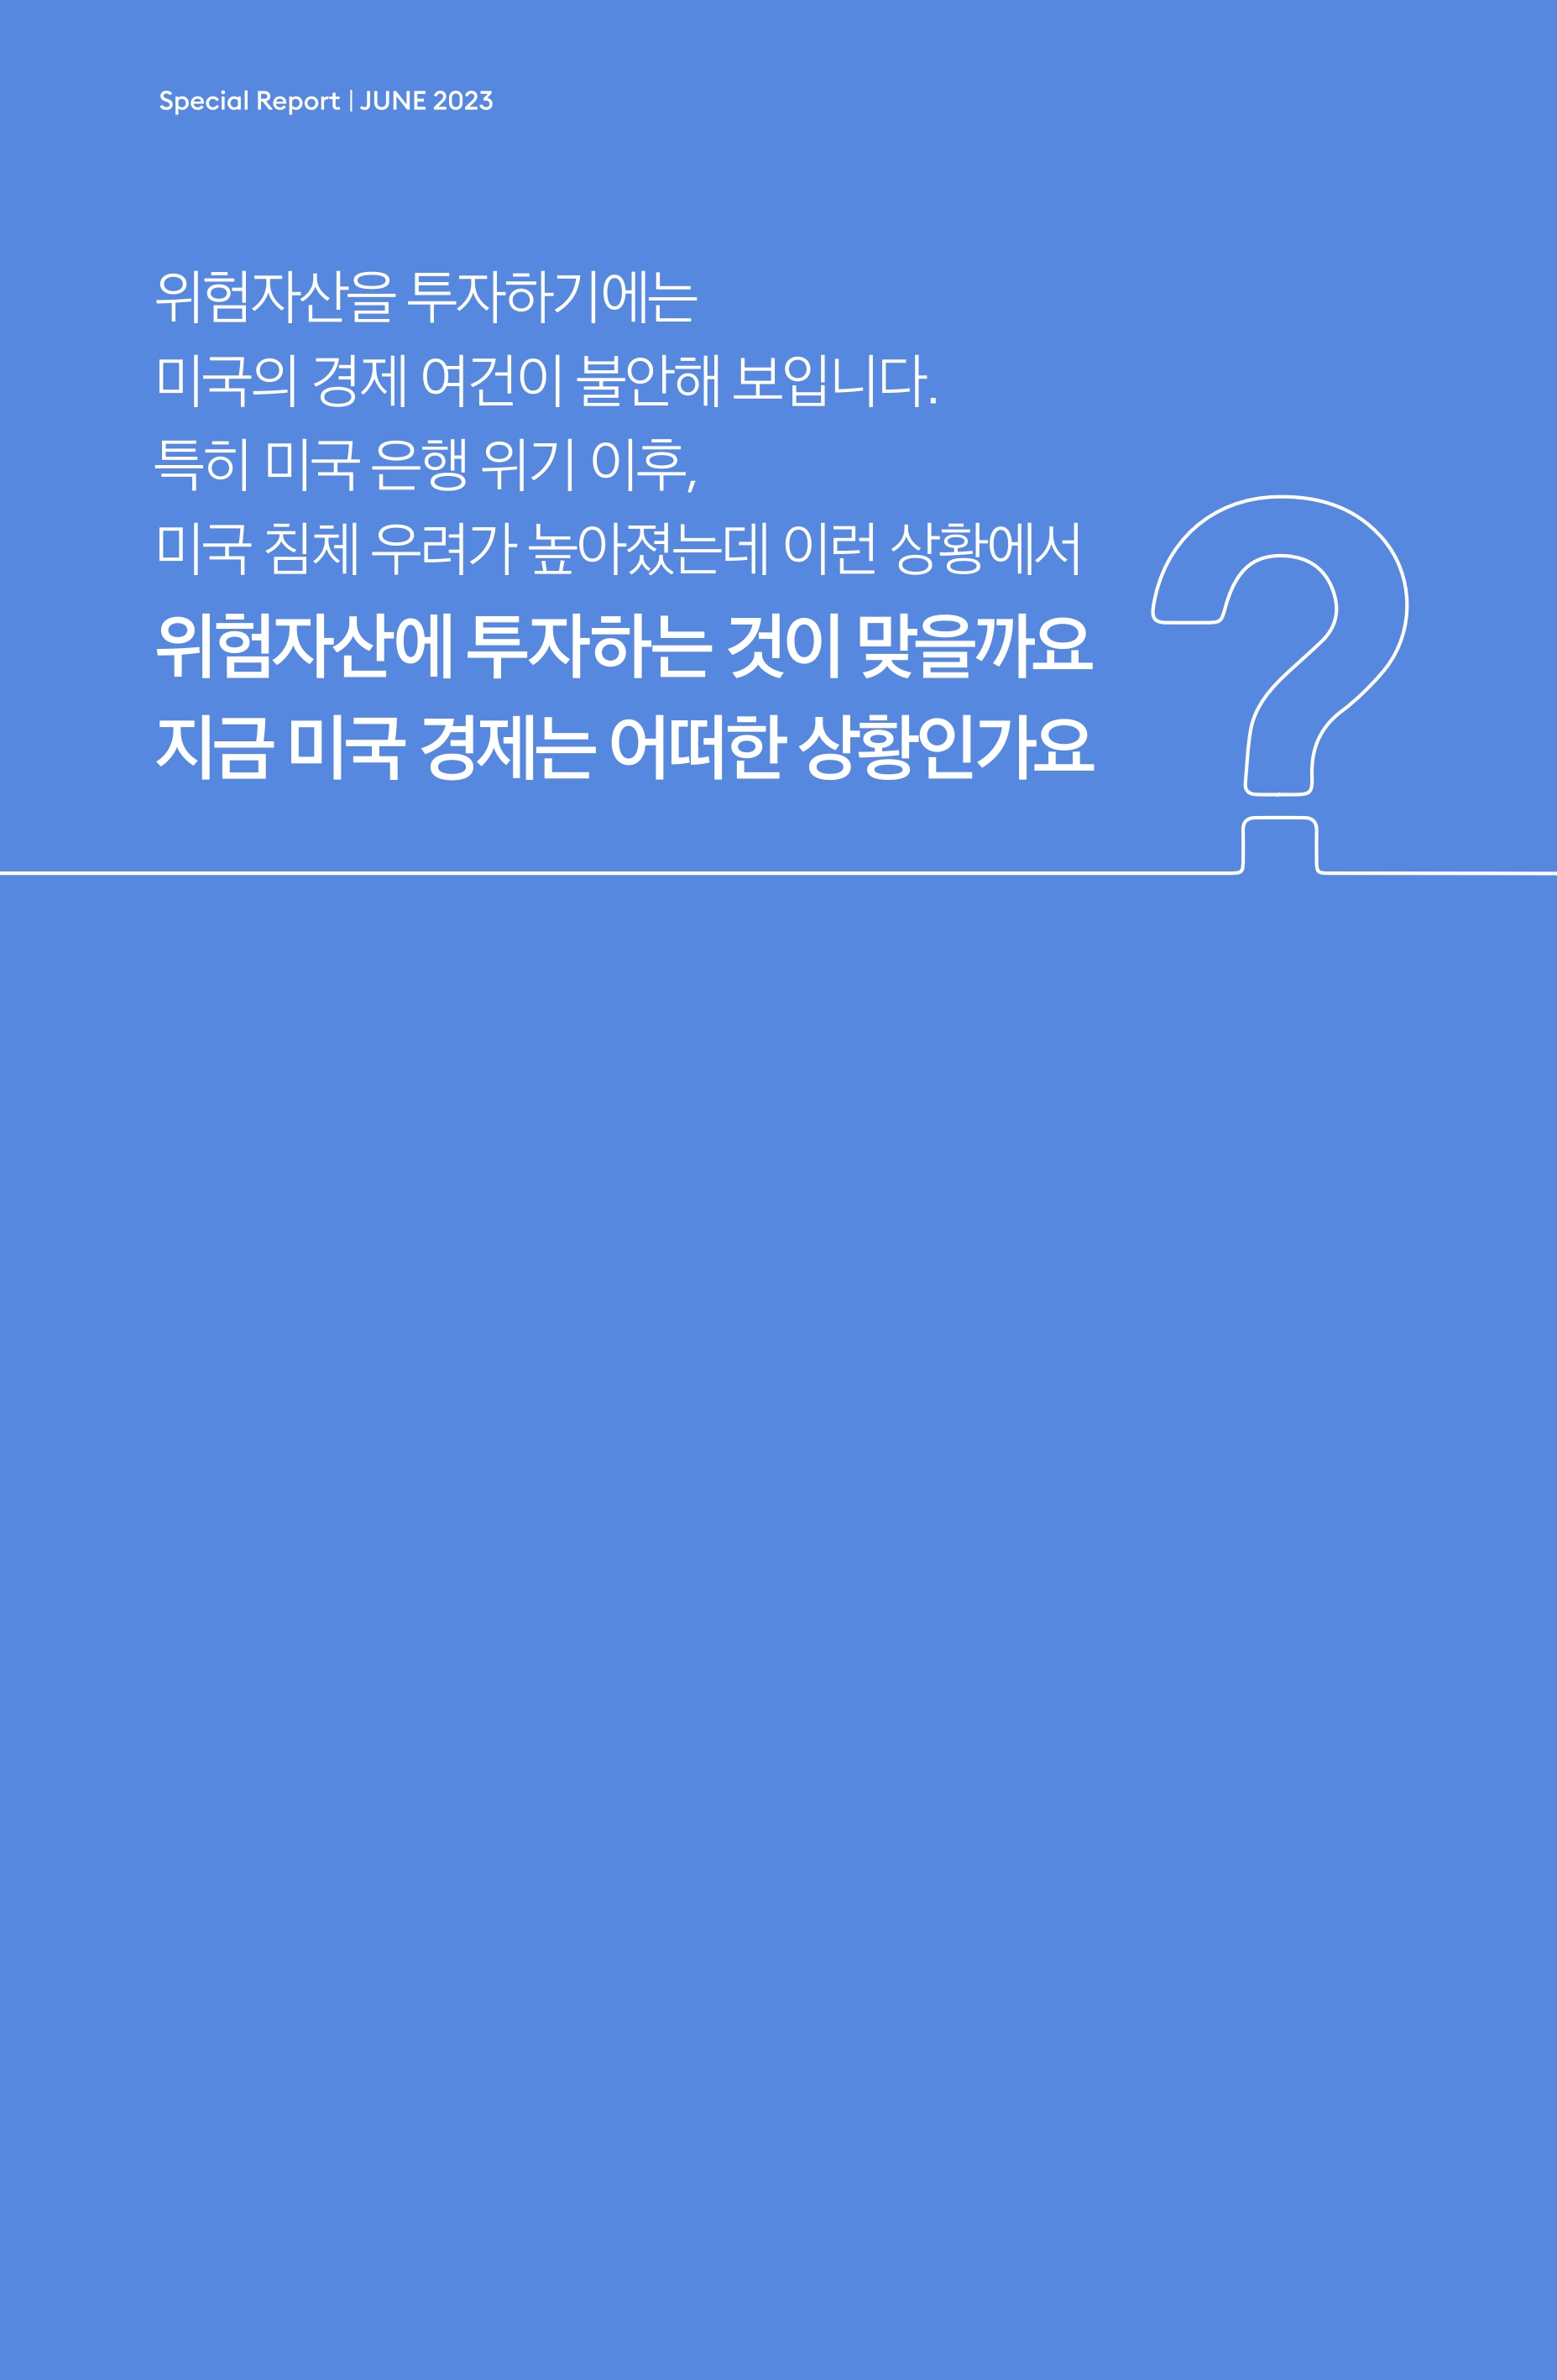 Samsung Global Market Outlook(낱장)_202306_page-0007.jpg